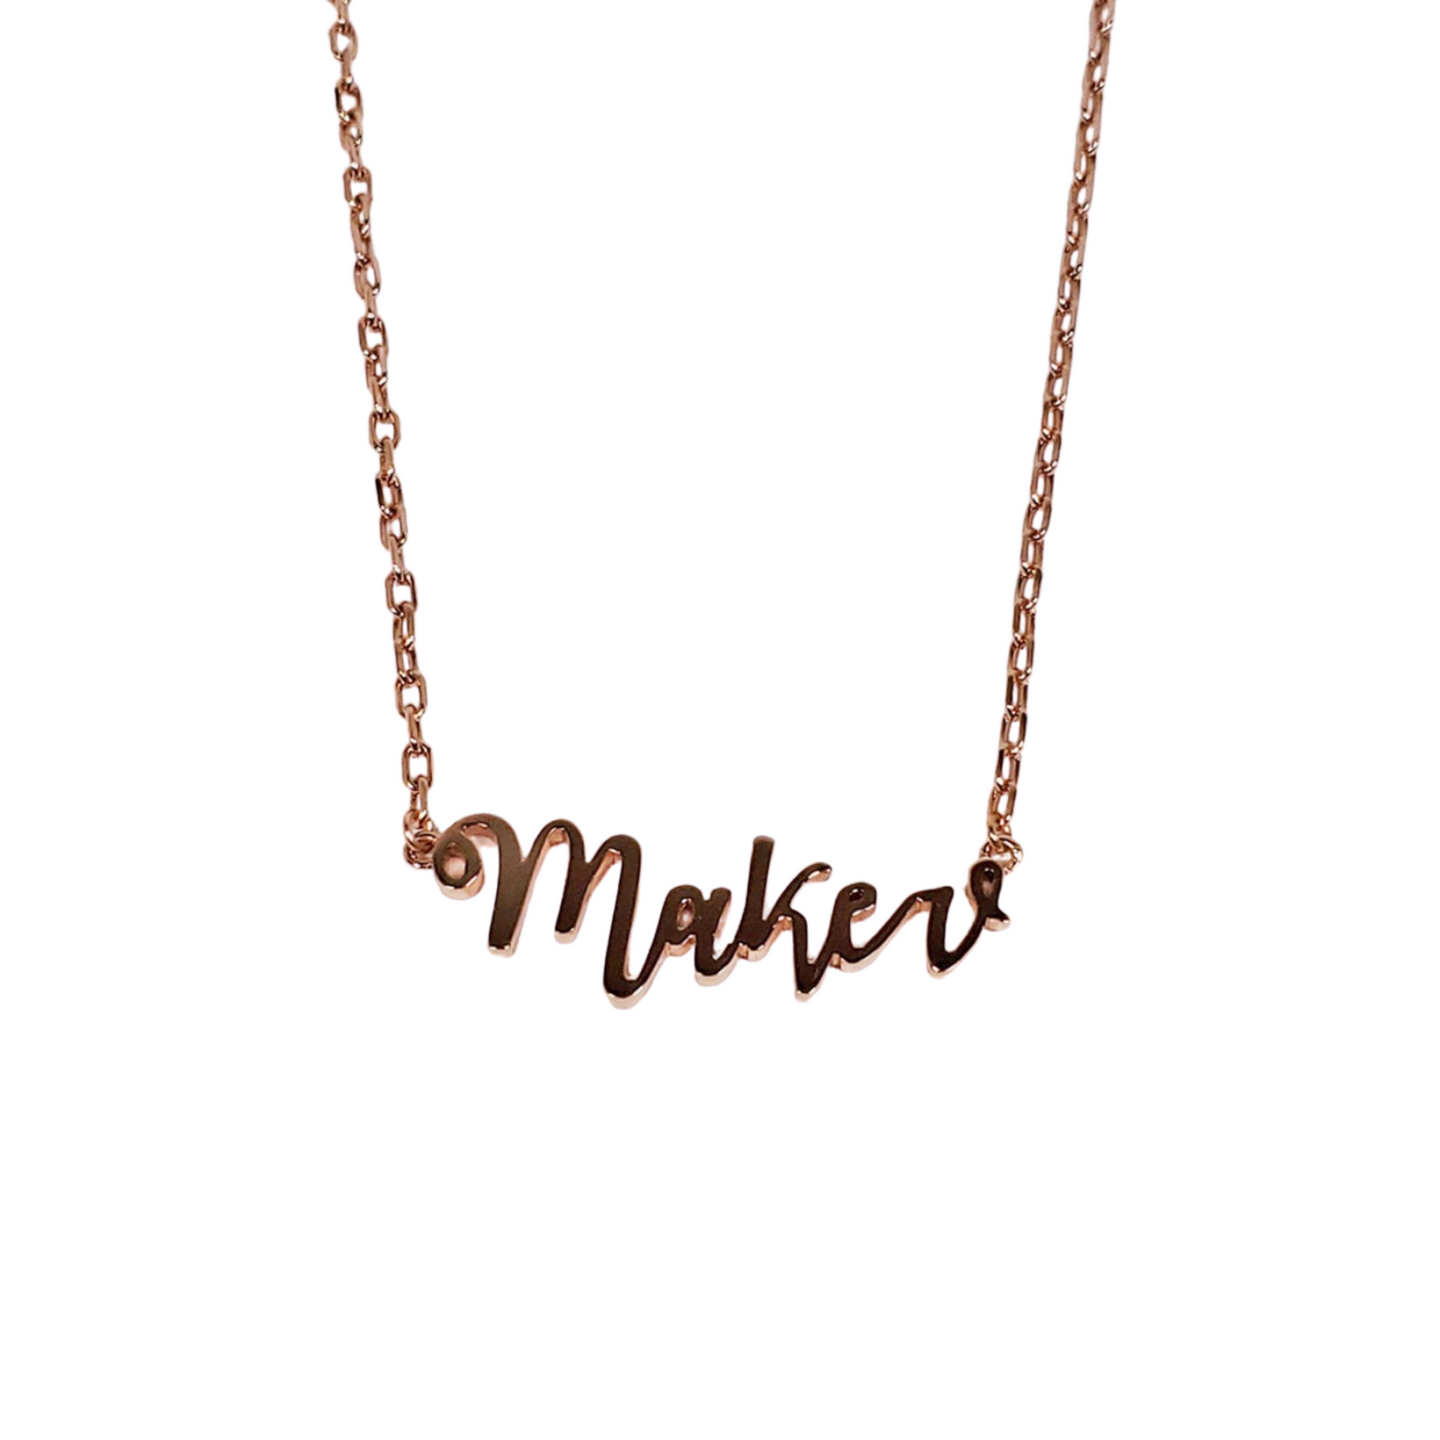 Maker Necklace - Rose Gold